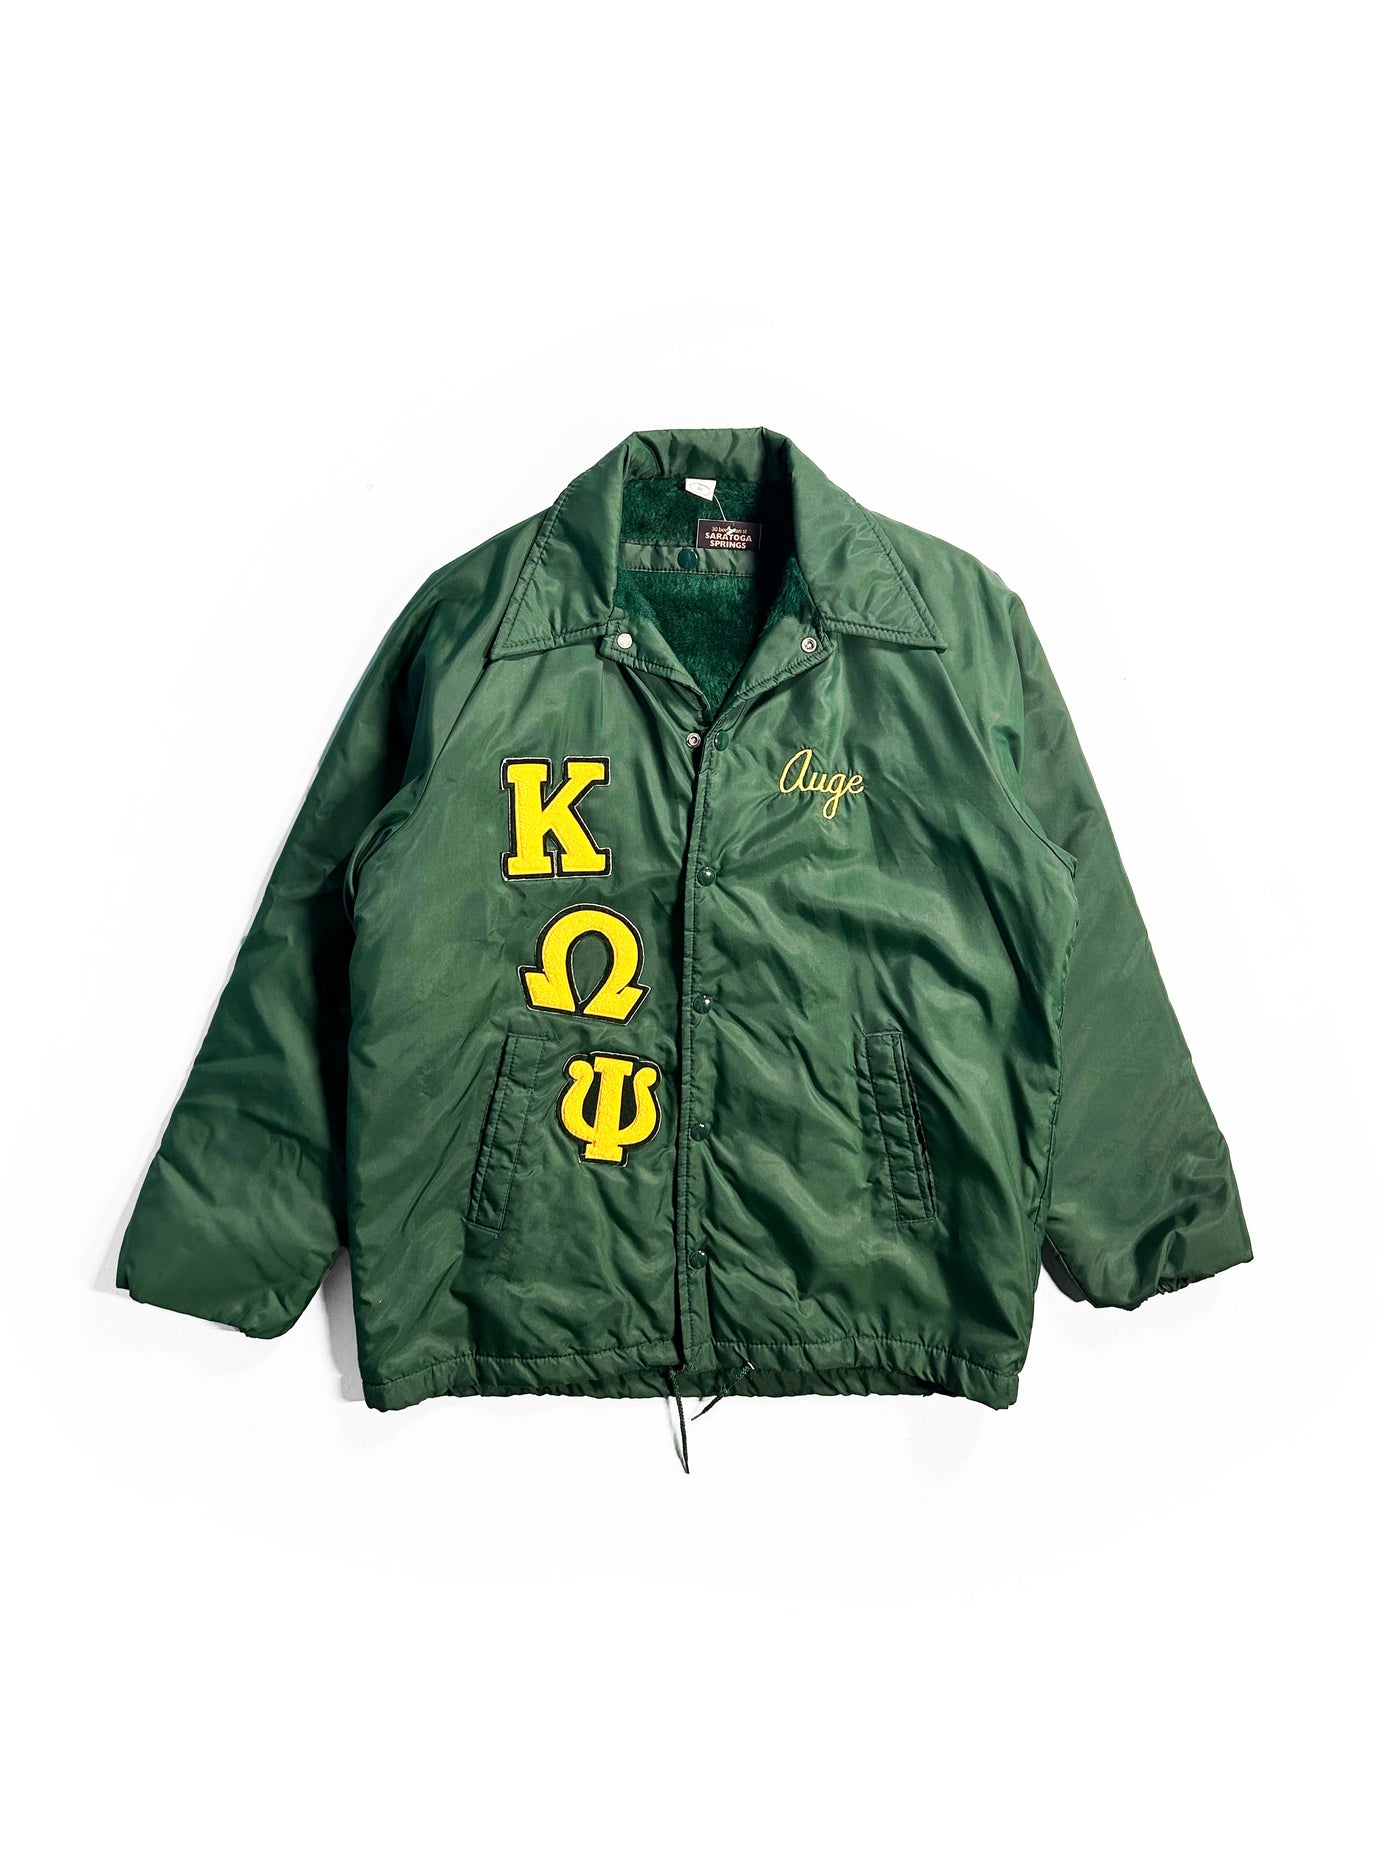 Vintage 80s Kappa Omega Lined Jacket